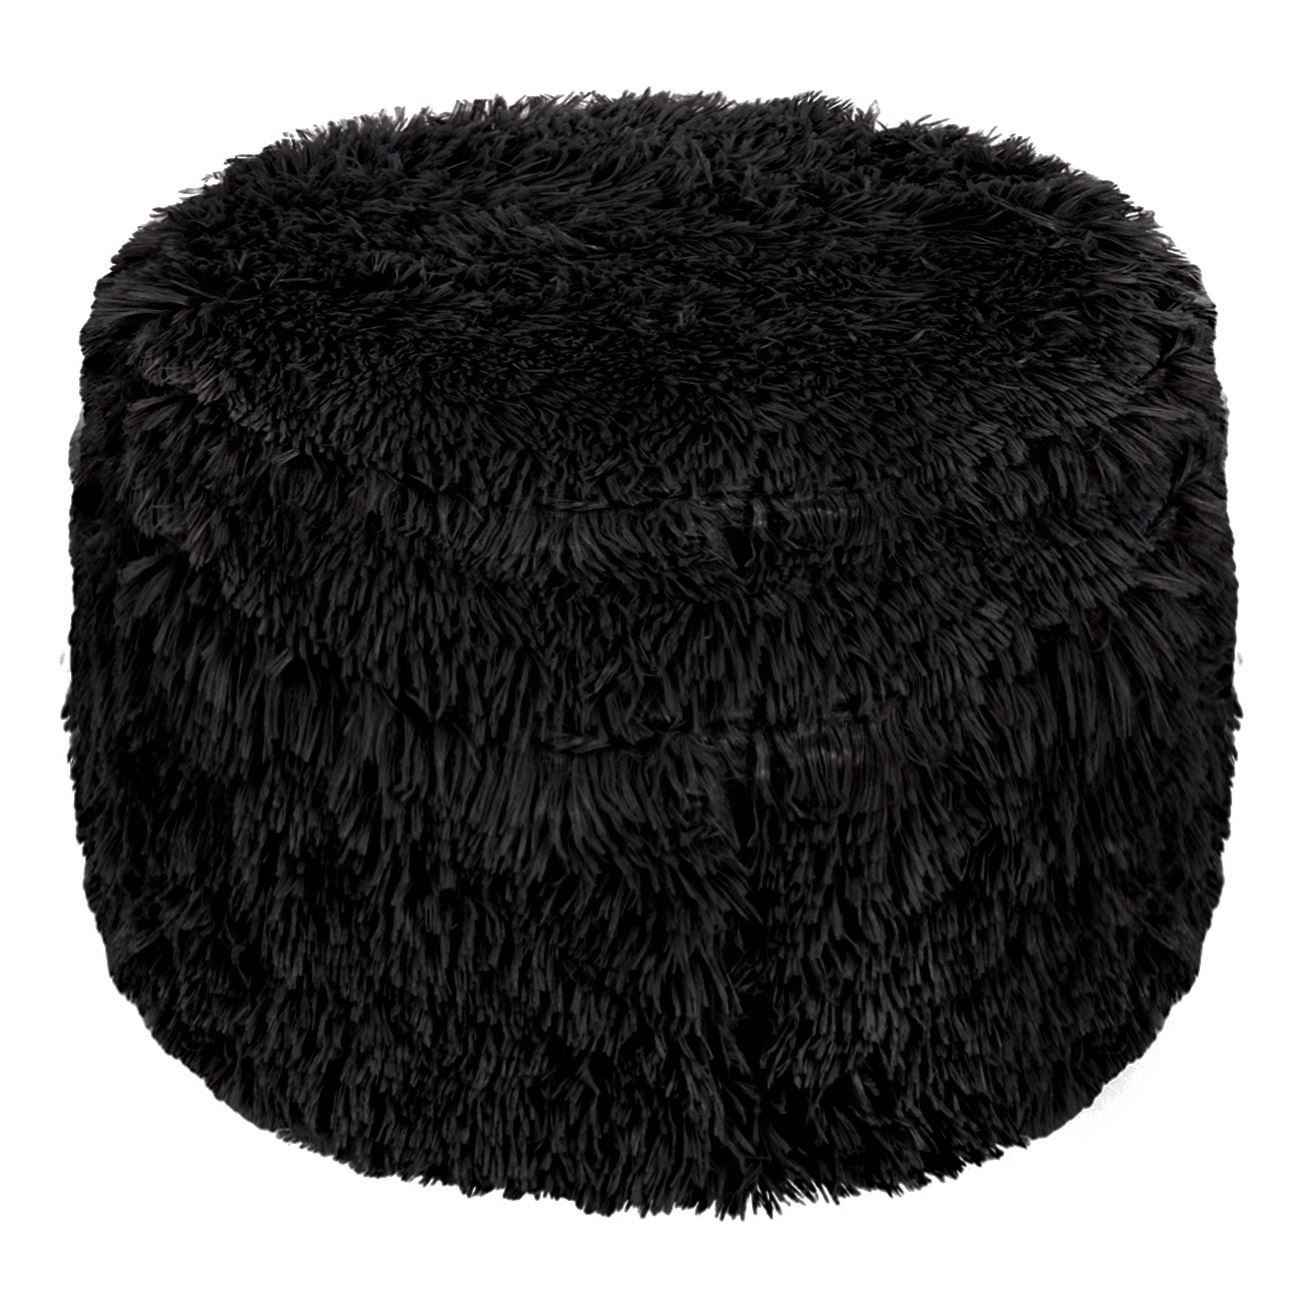 Pouf felfújható téli dekoráció puff fekete 38x20cm